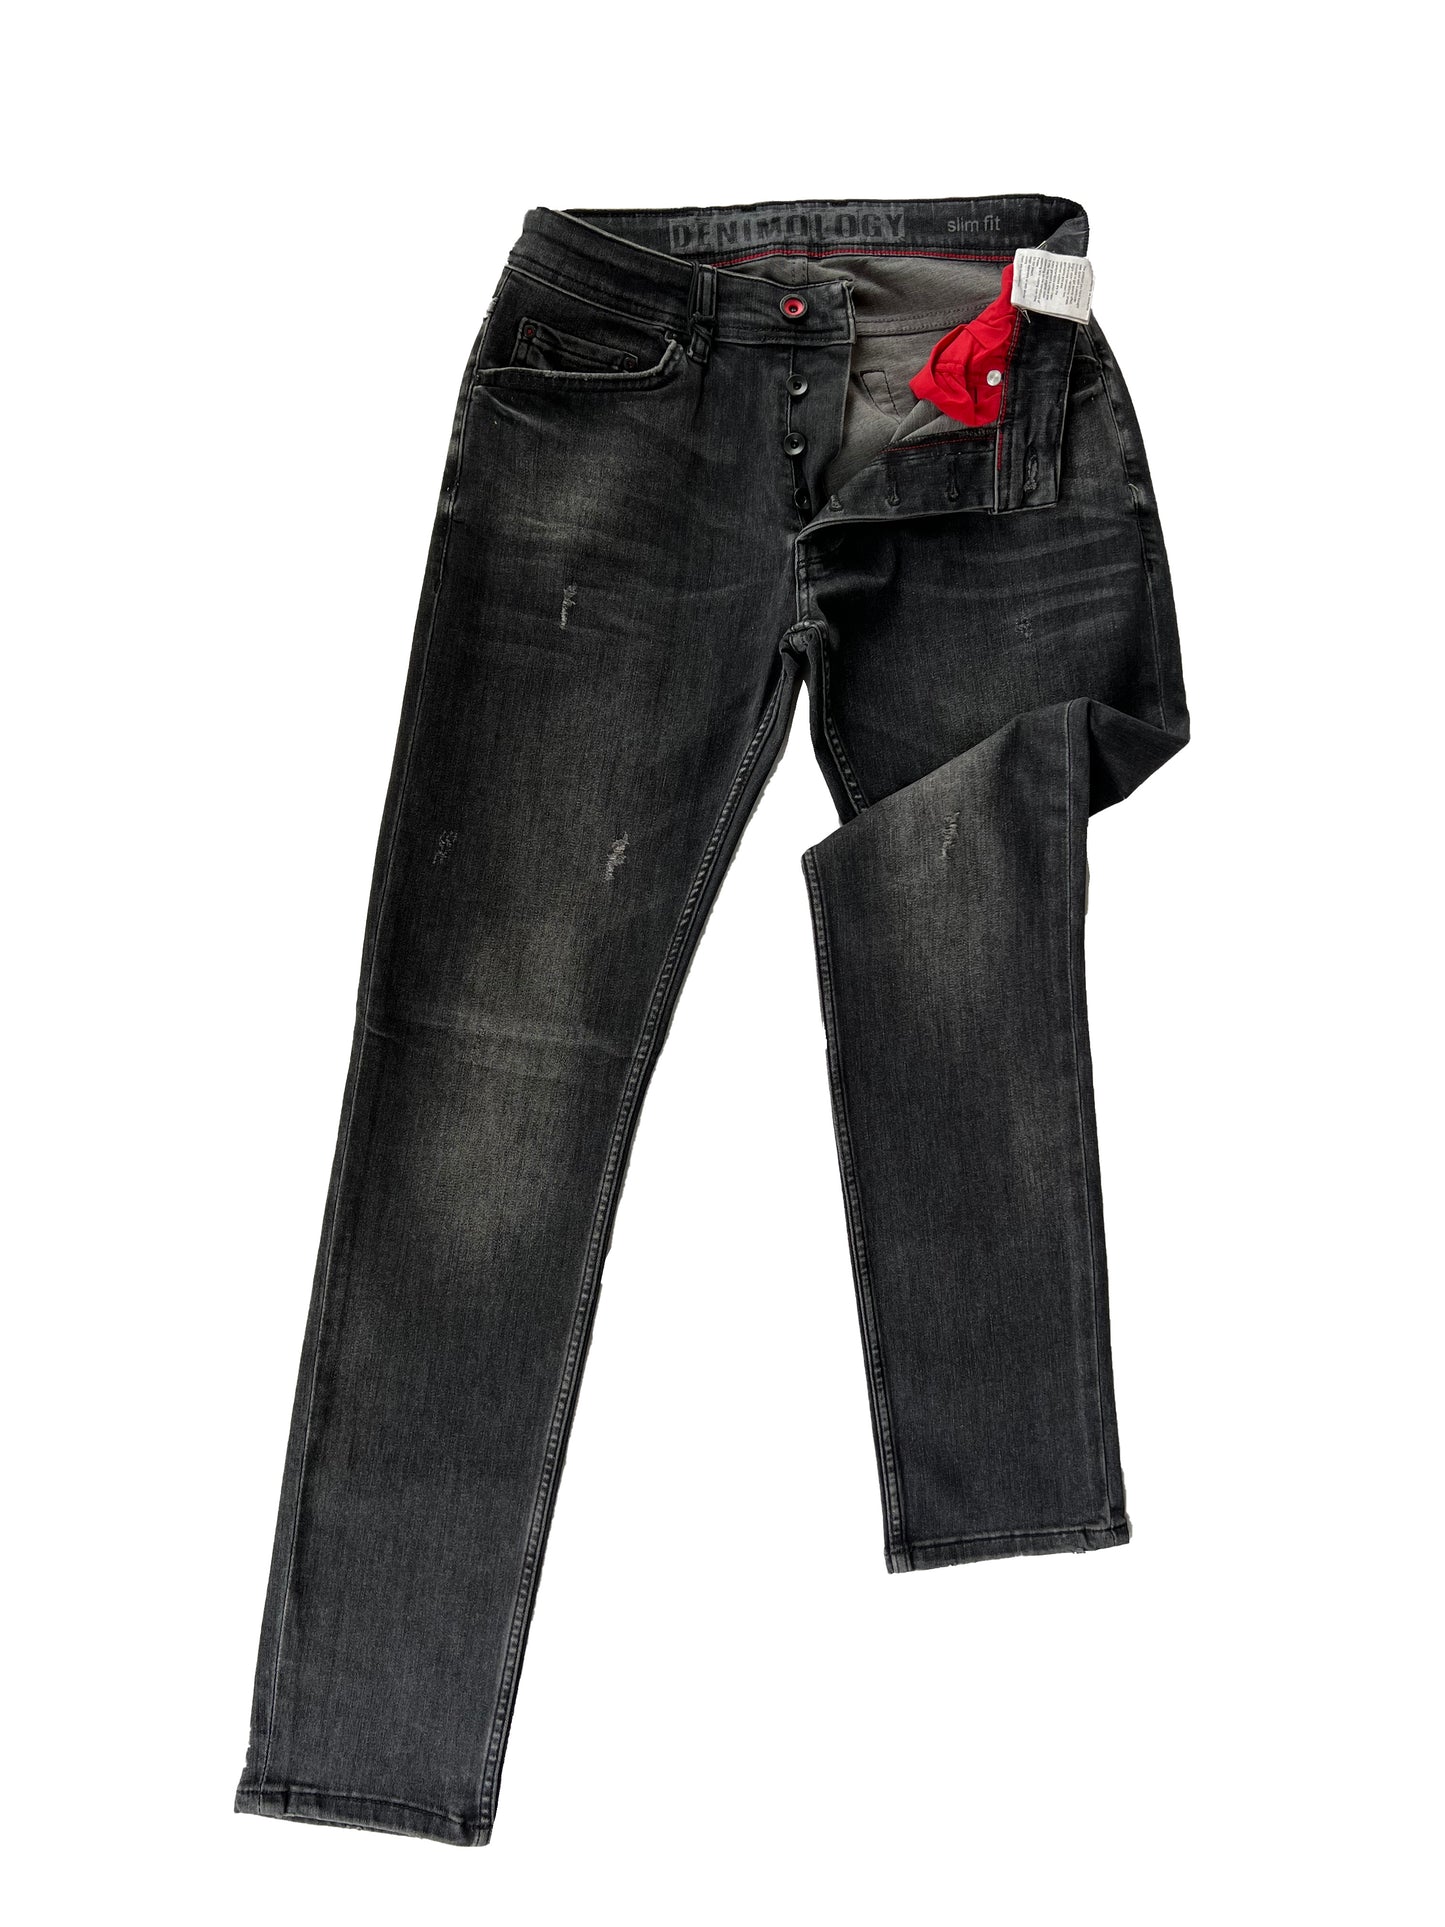 Jeans, Pantalons Confortables Coupe Slim Homme - Moffat 